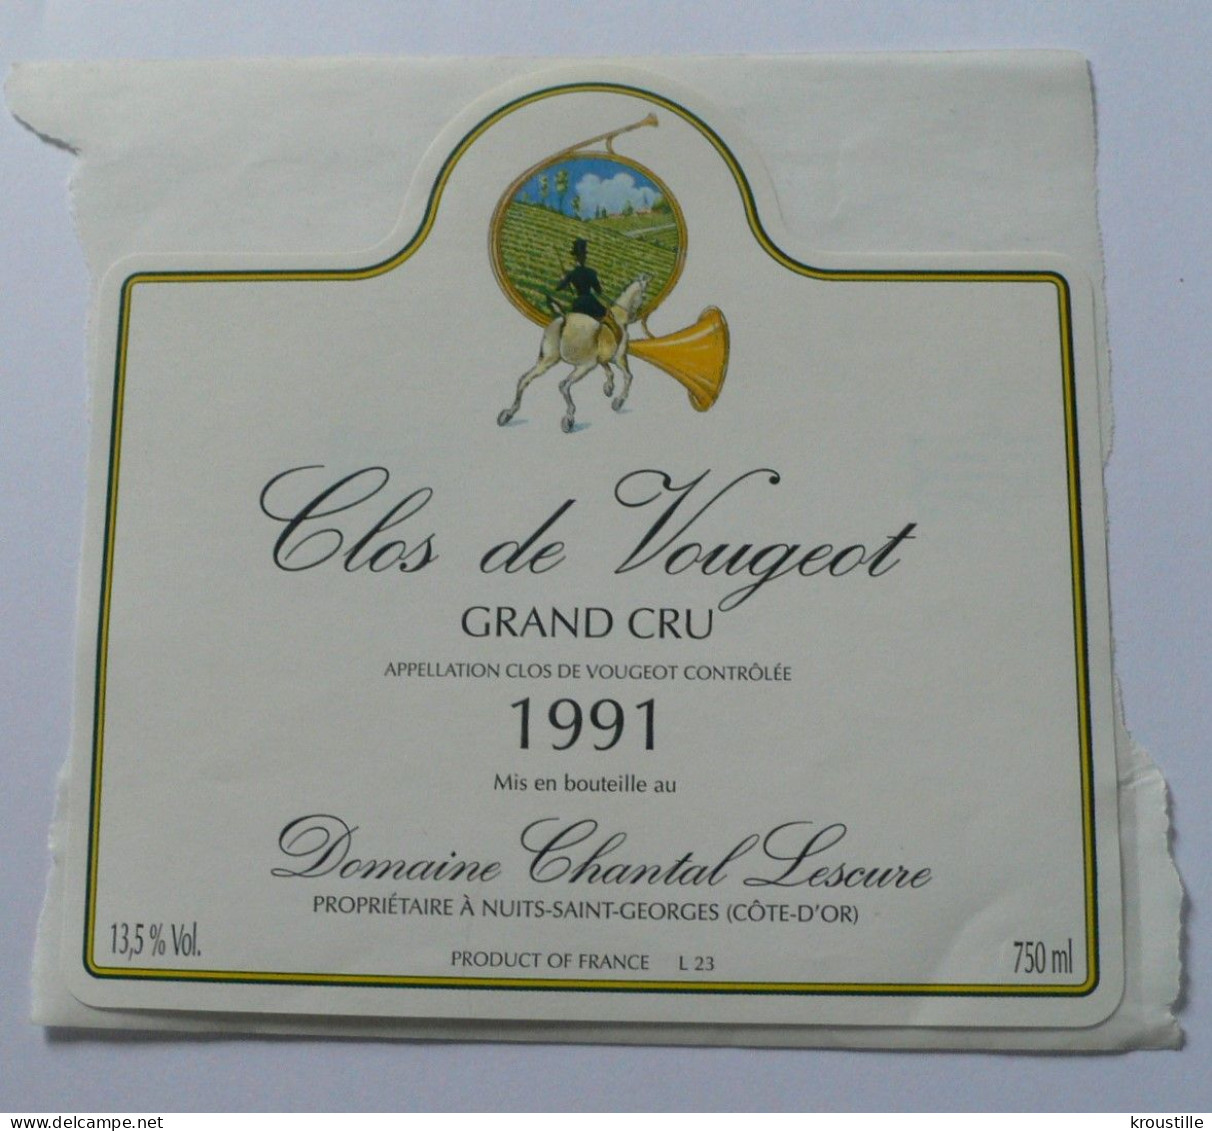 CLOS DE VOUGEOT - GRAND CRU 1991 - ETIQUETTE NEUVE - THEME CHASSE - Chasse